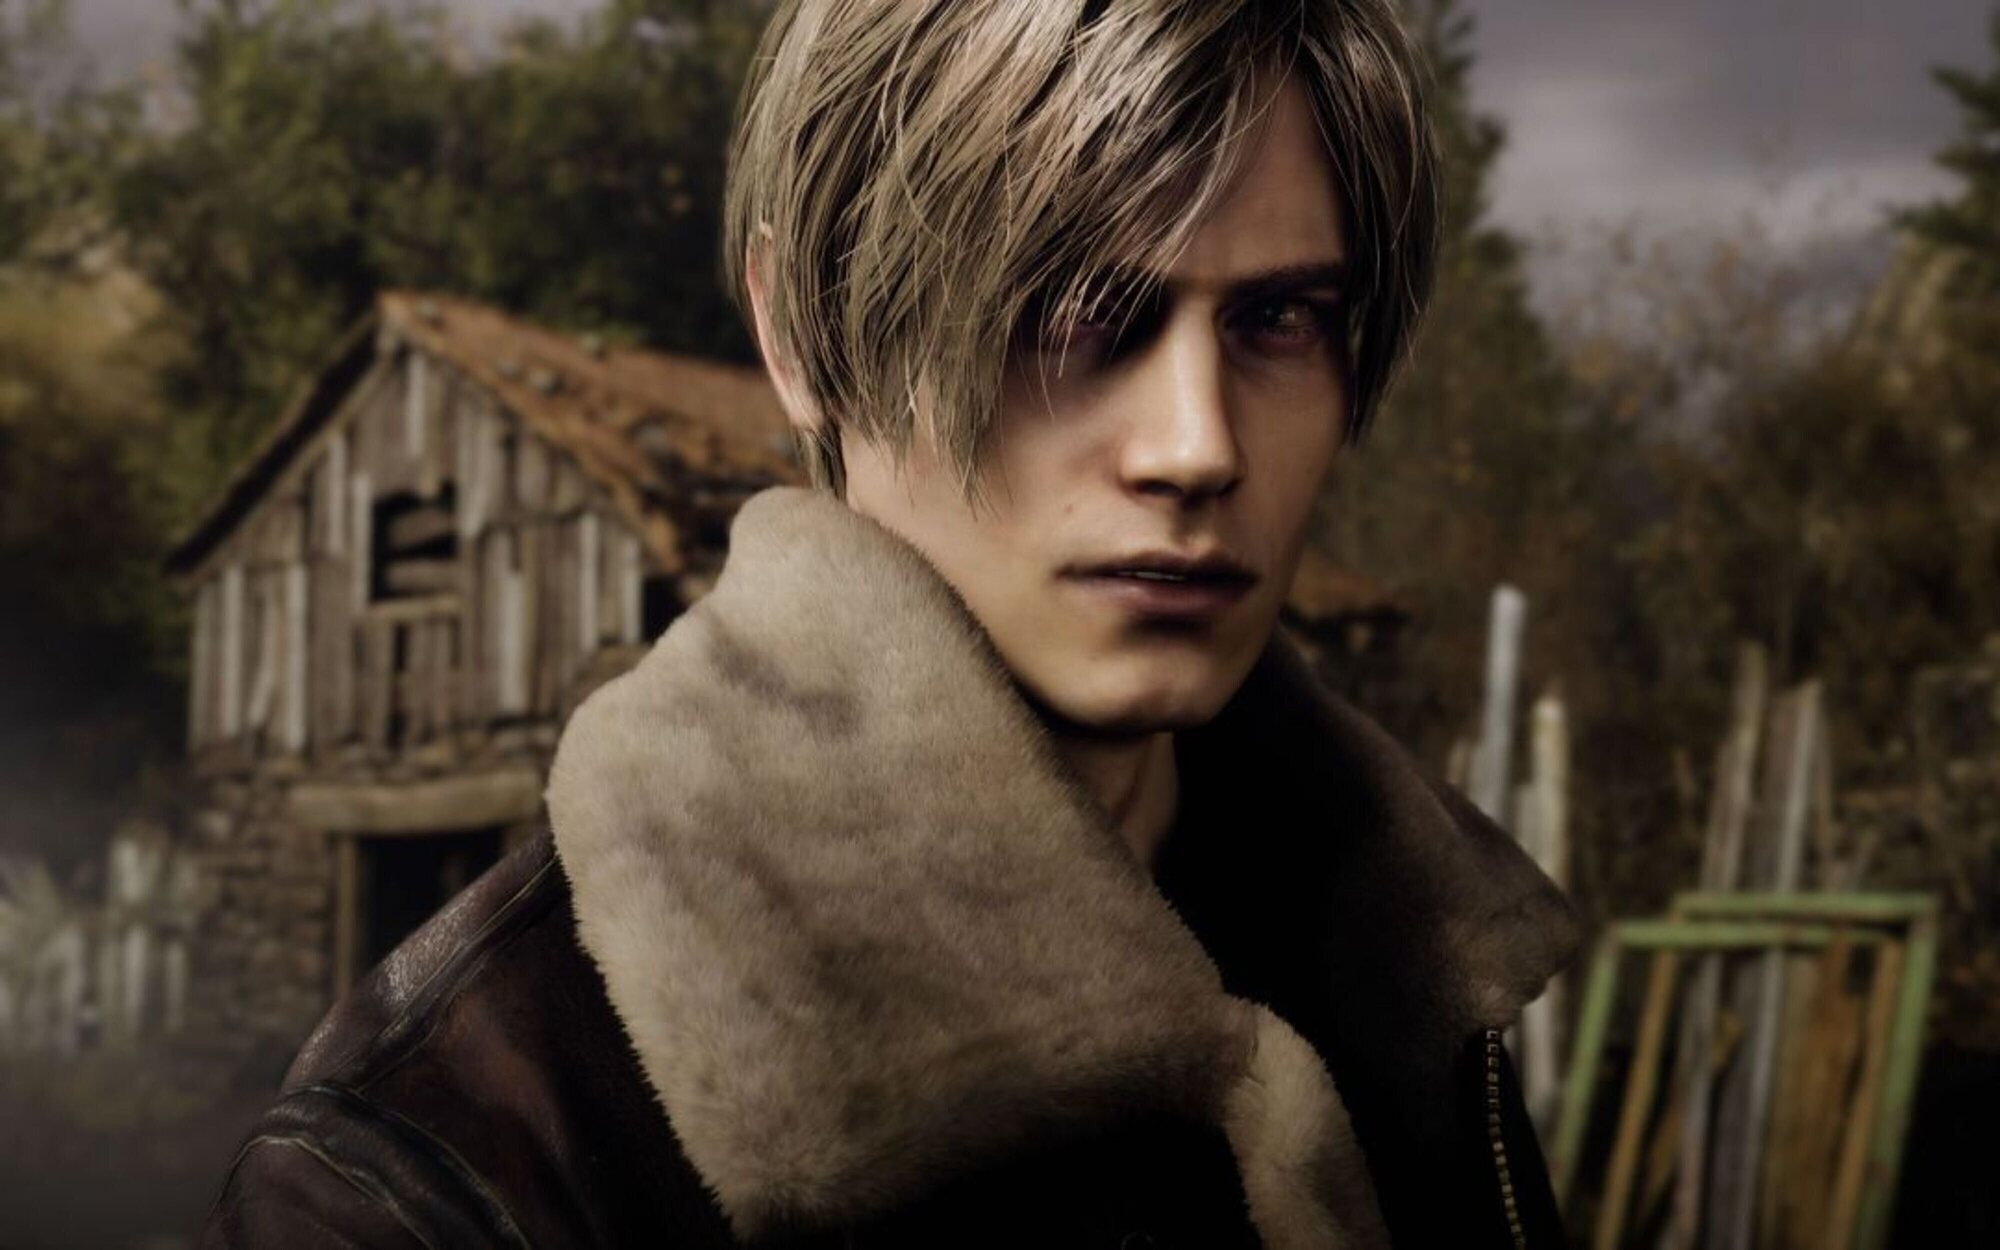 Capcom anuncia versión de PS4 para 'Resident Evil 4 Remake' y un gran Showcase de la saga